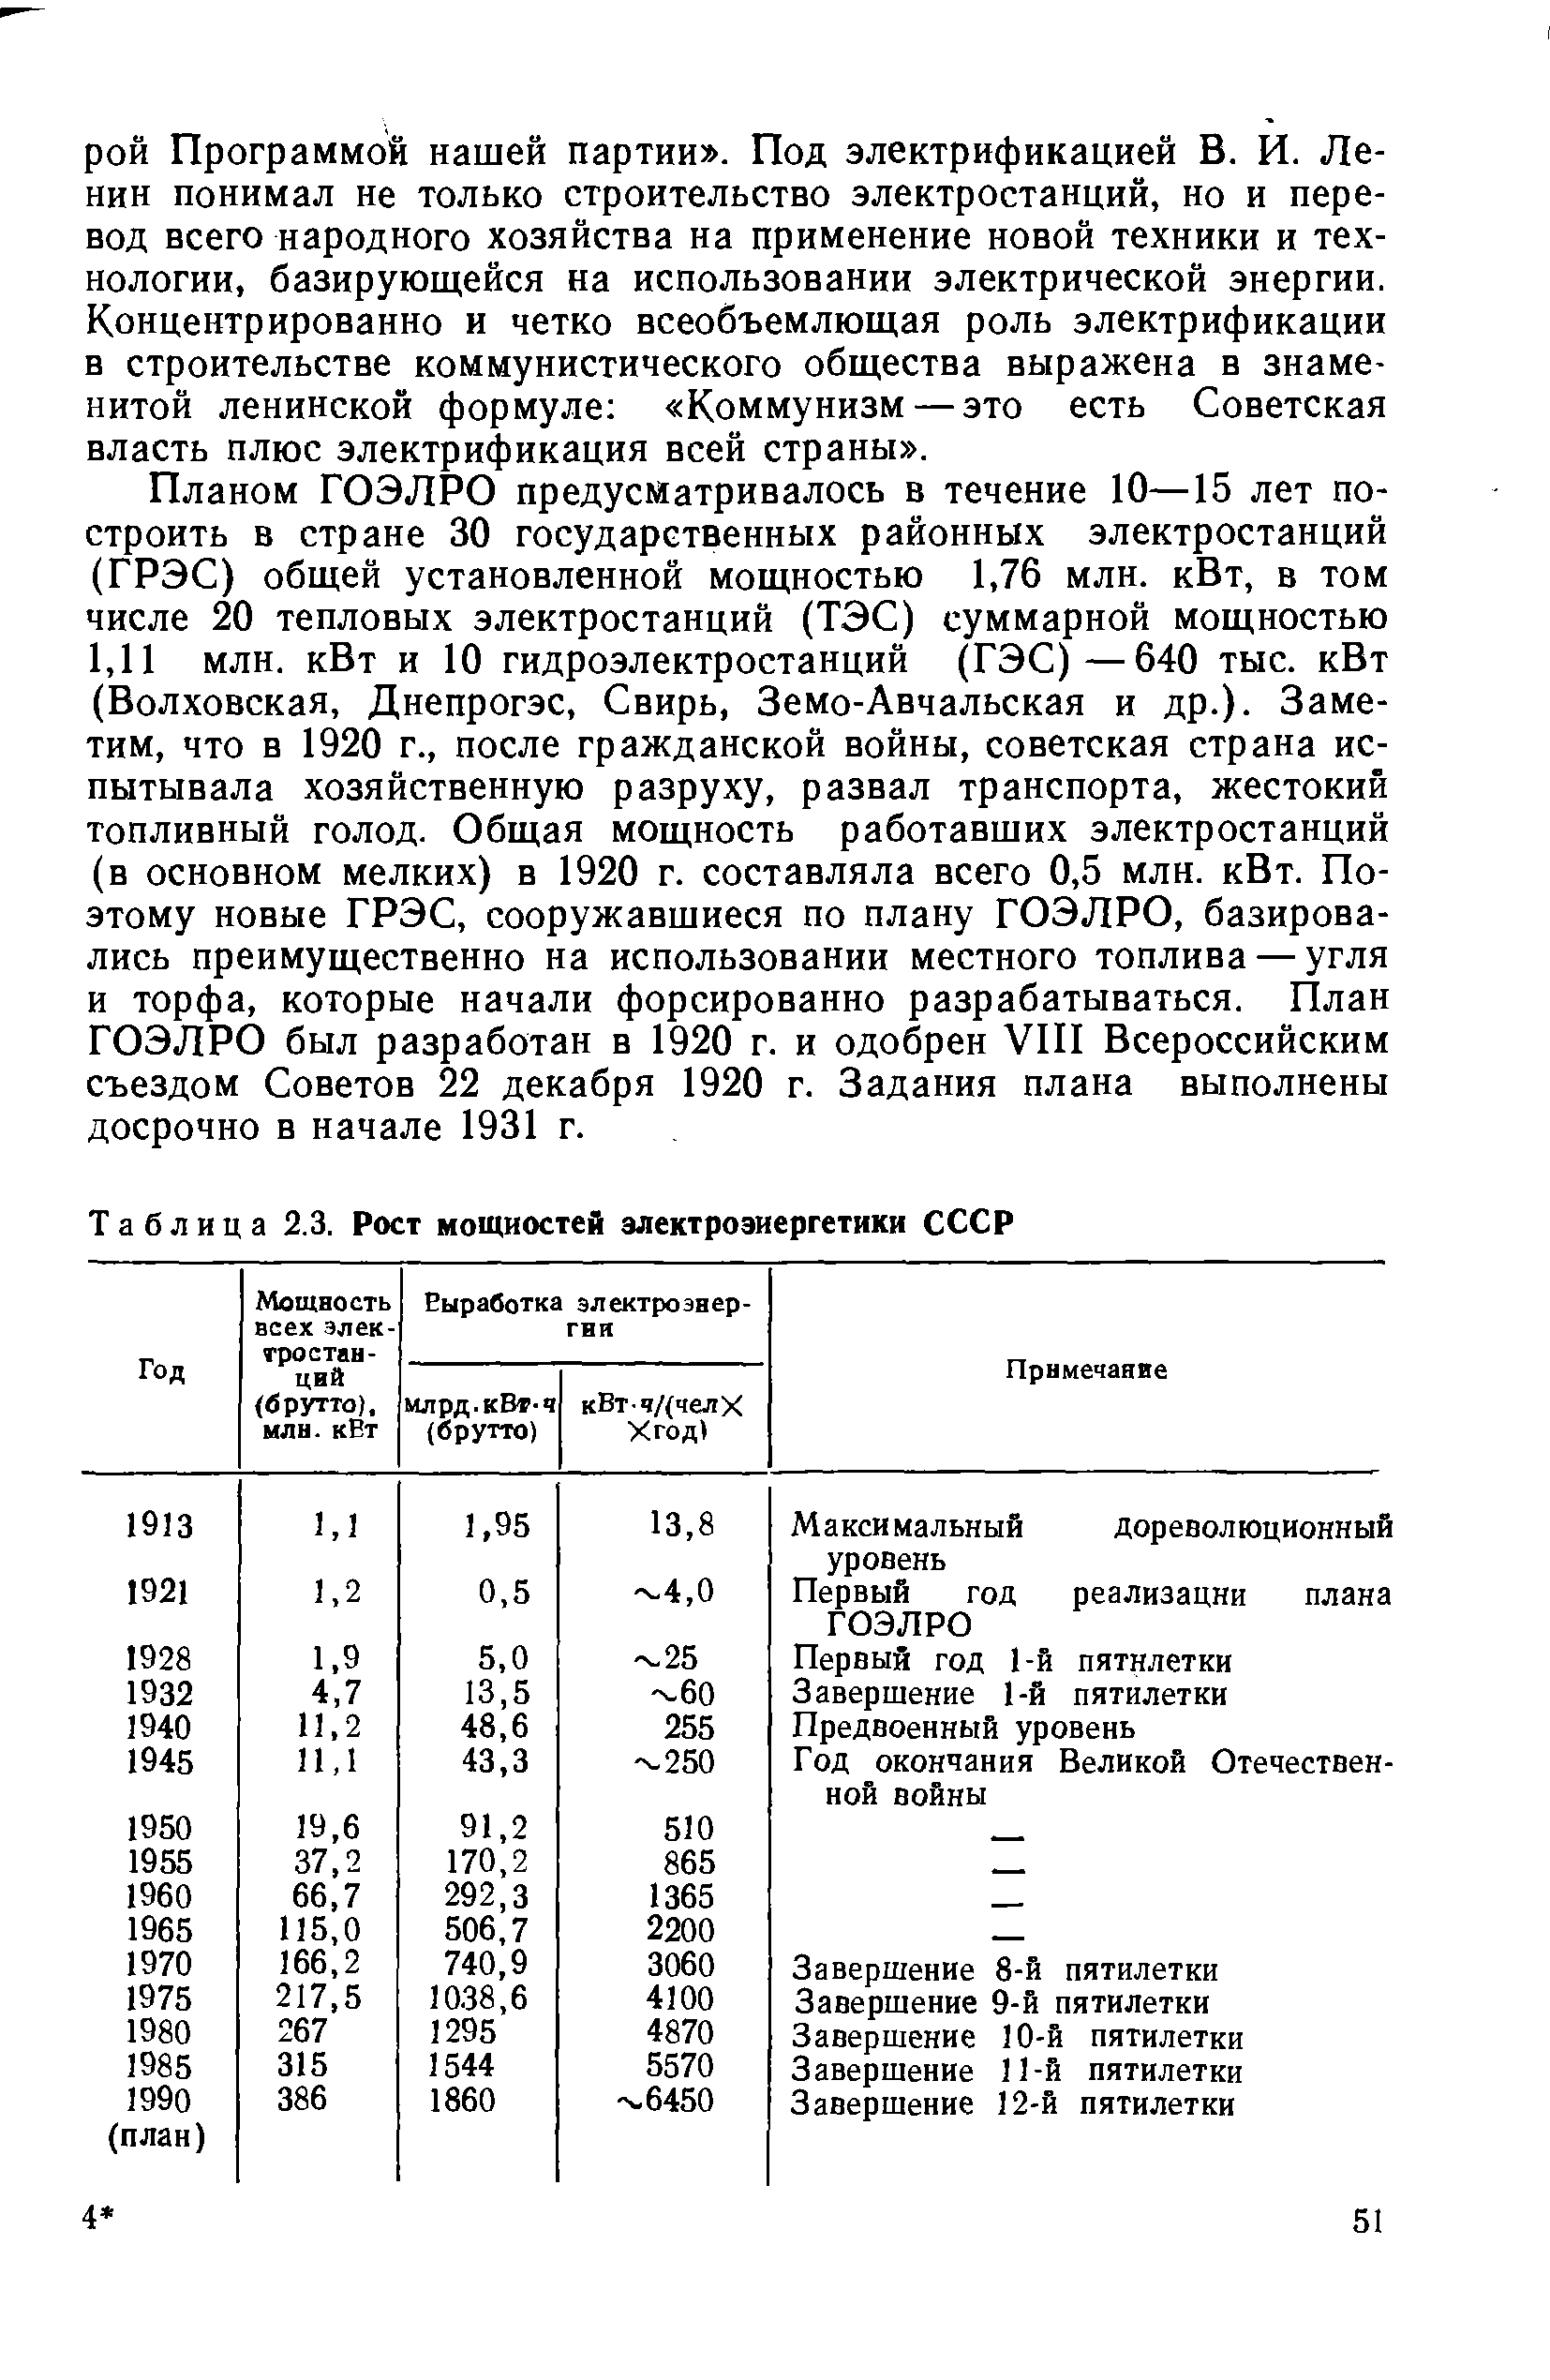 Таблица 2.3. Рост мощностей электроэнергетики СССР
